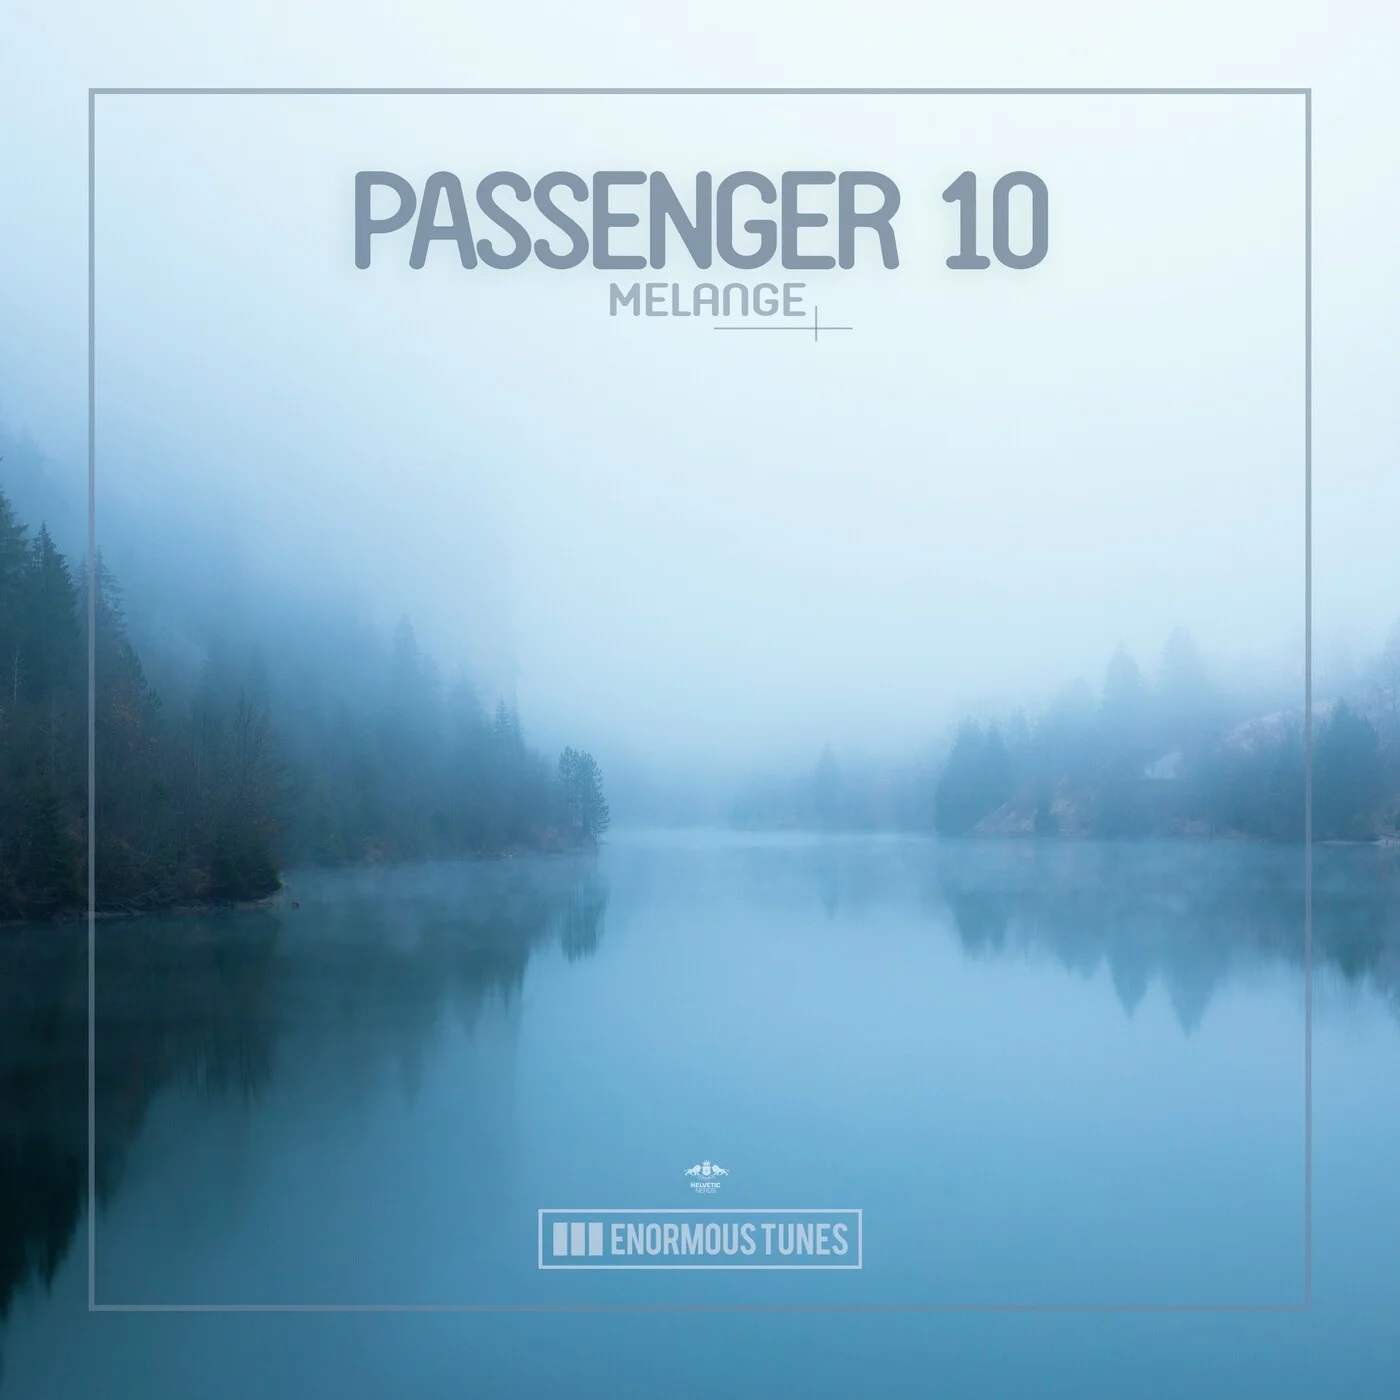 Passenger 10 - Melange (Extended Mix)